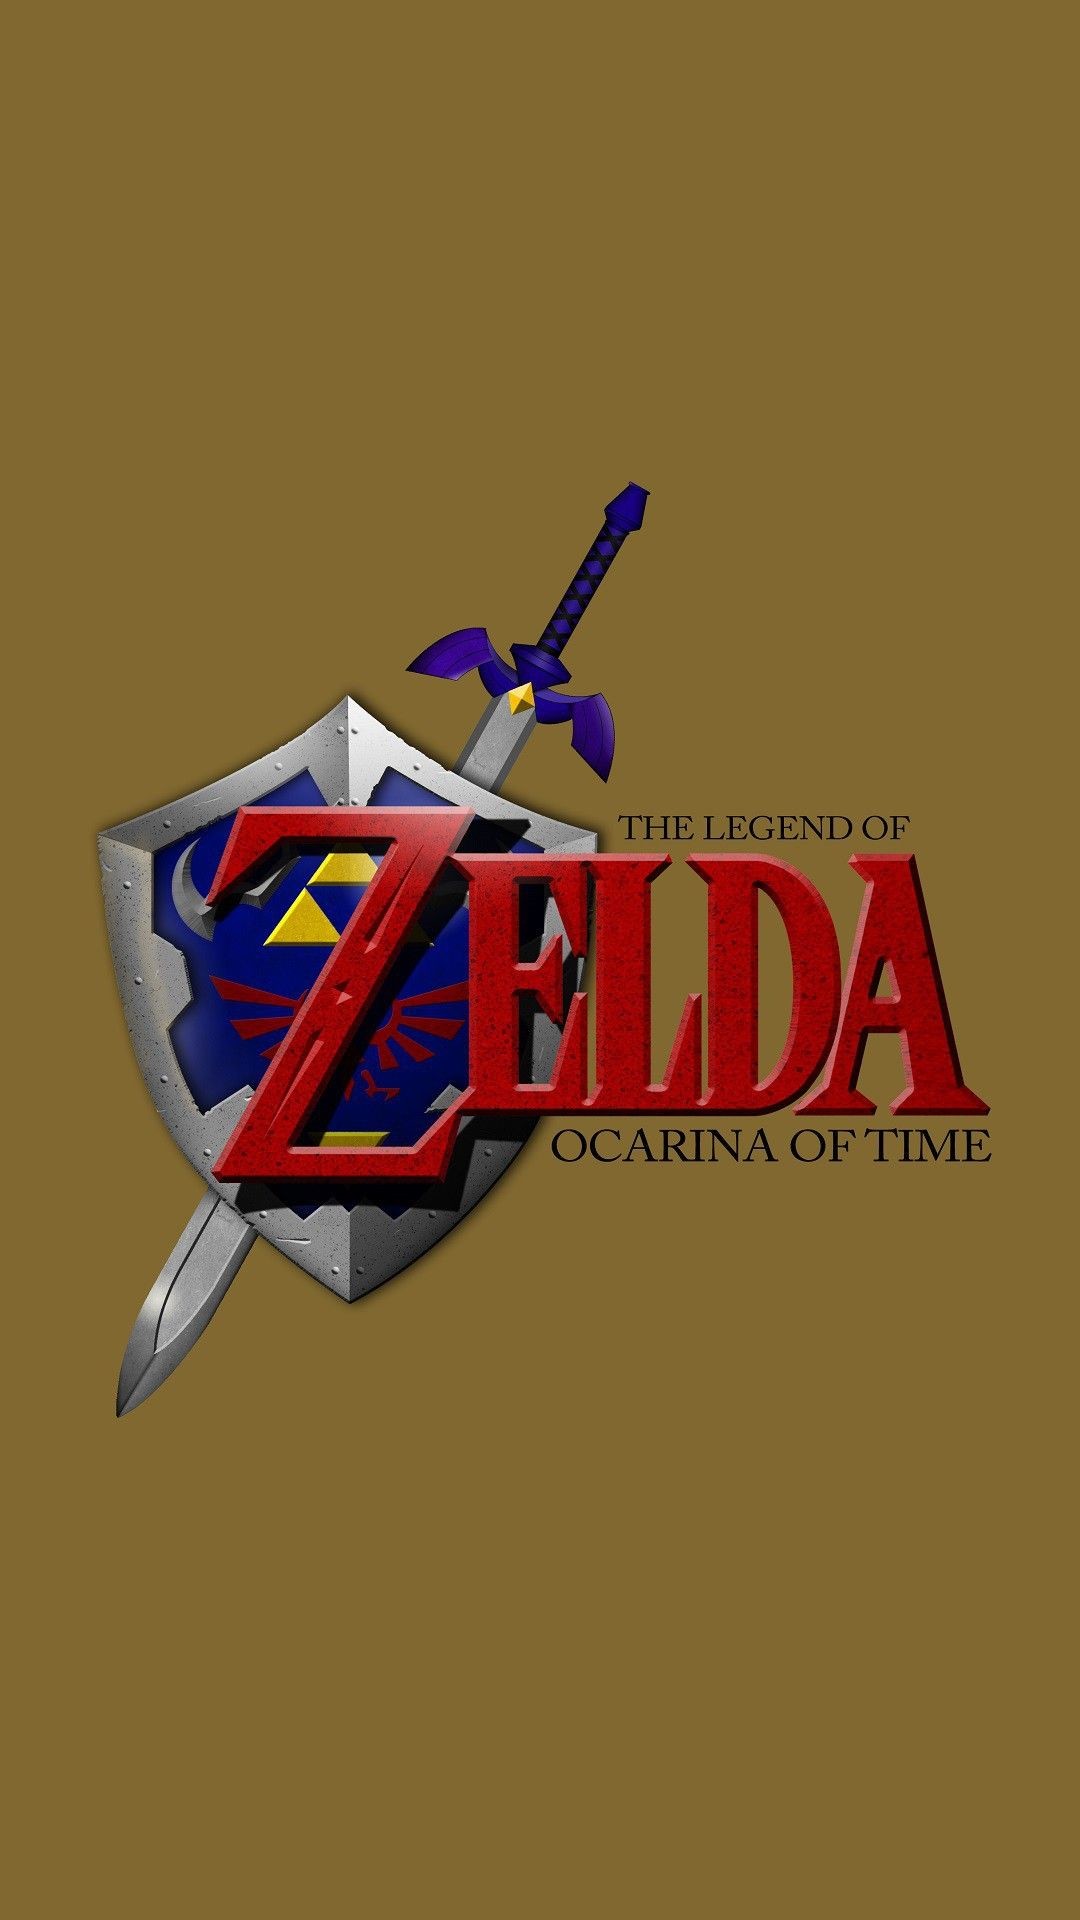 1080x1920 The Legend of Zelda The Legend of Zelda: Ocarina of Time Zelda s4 .